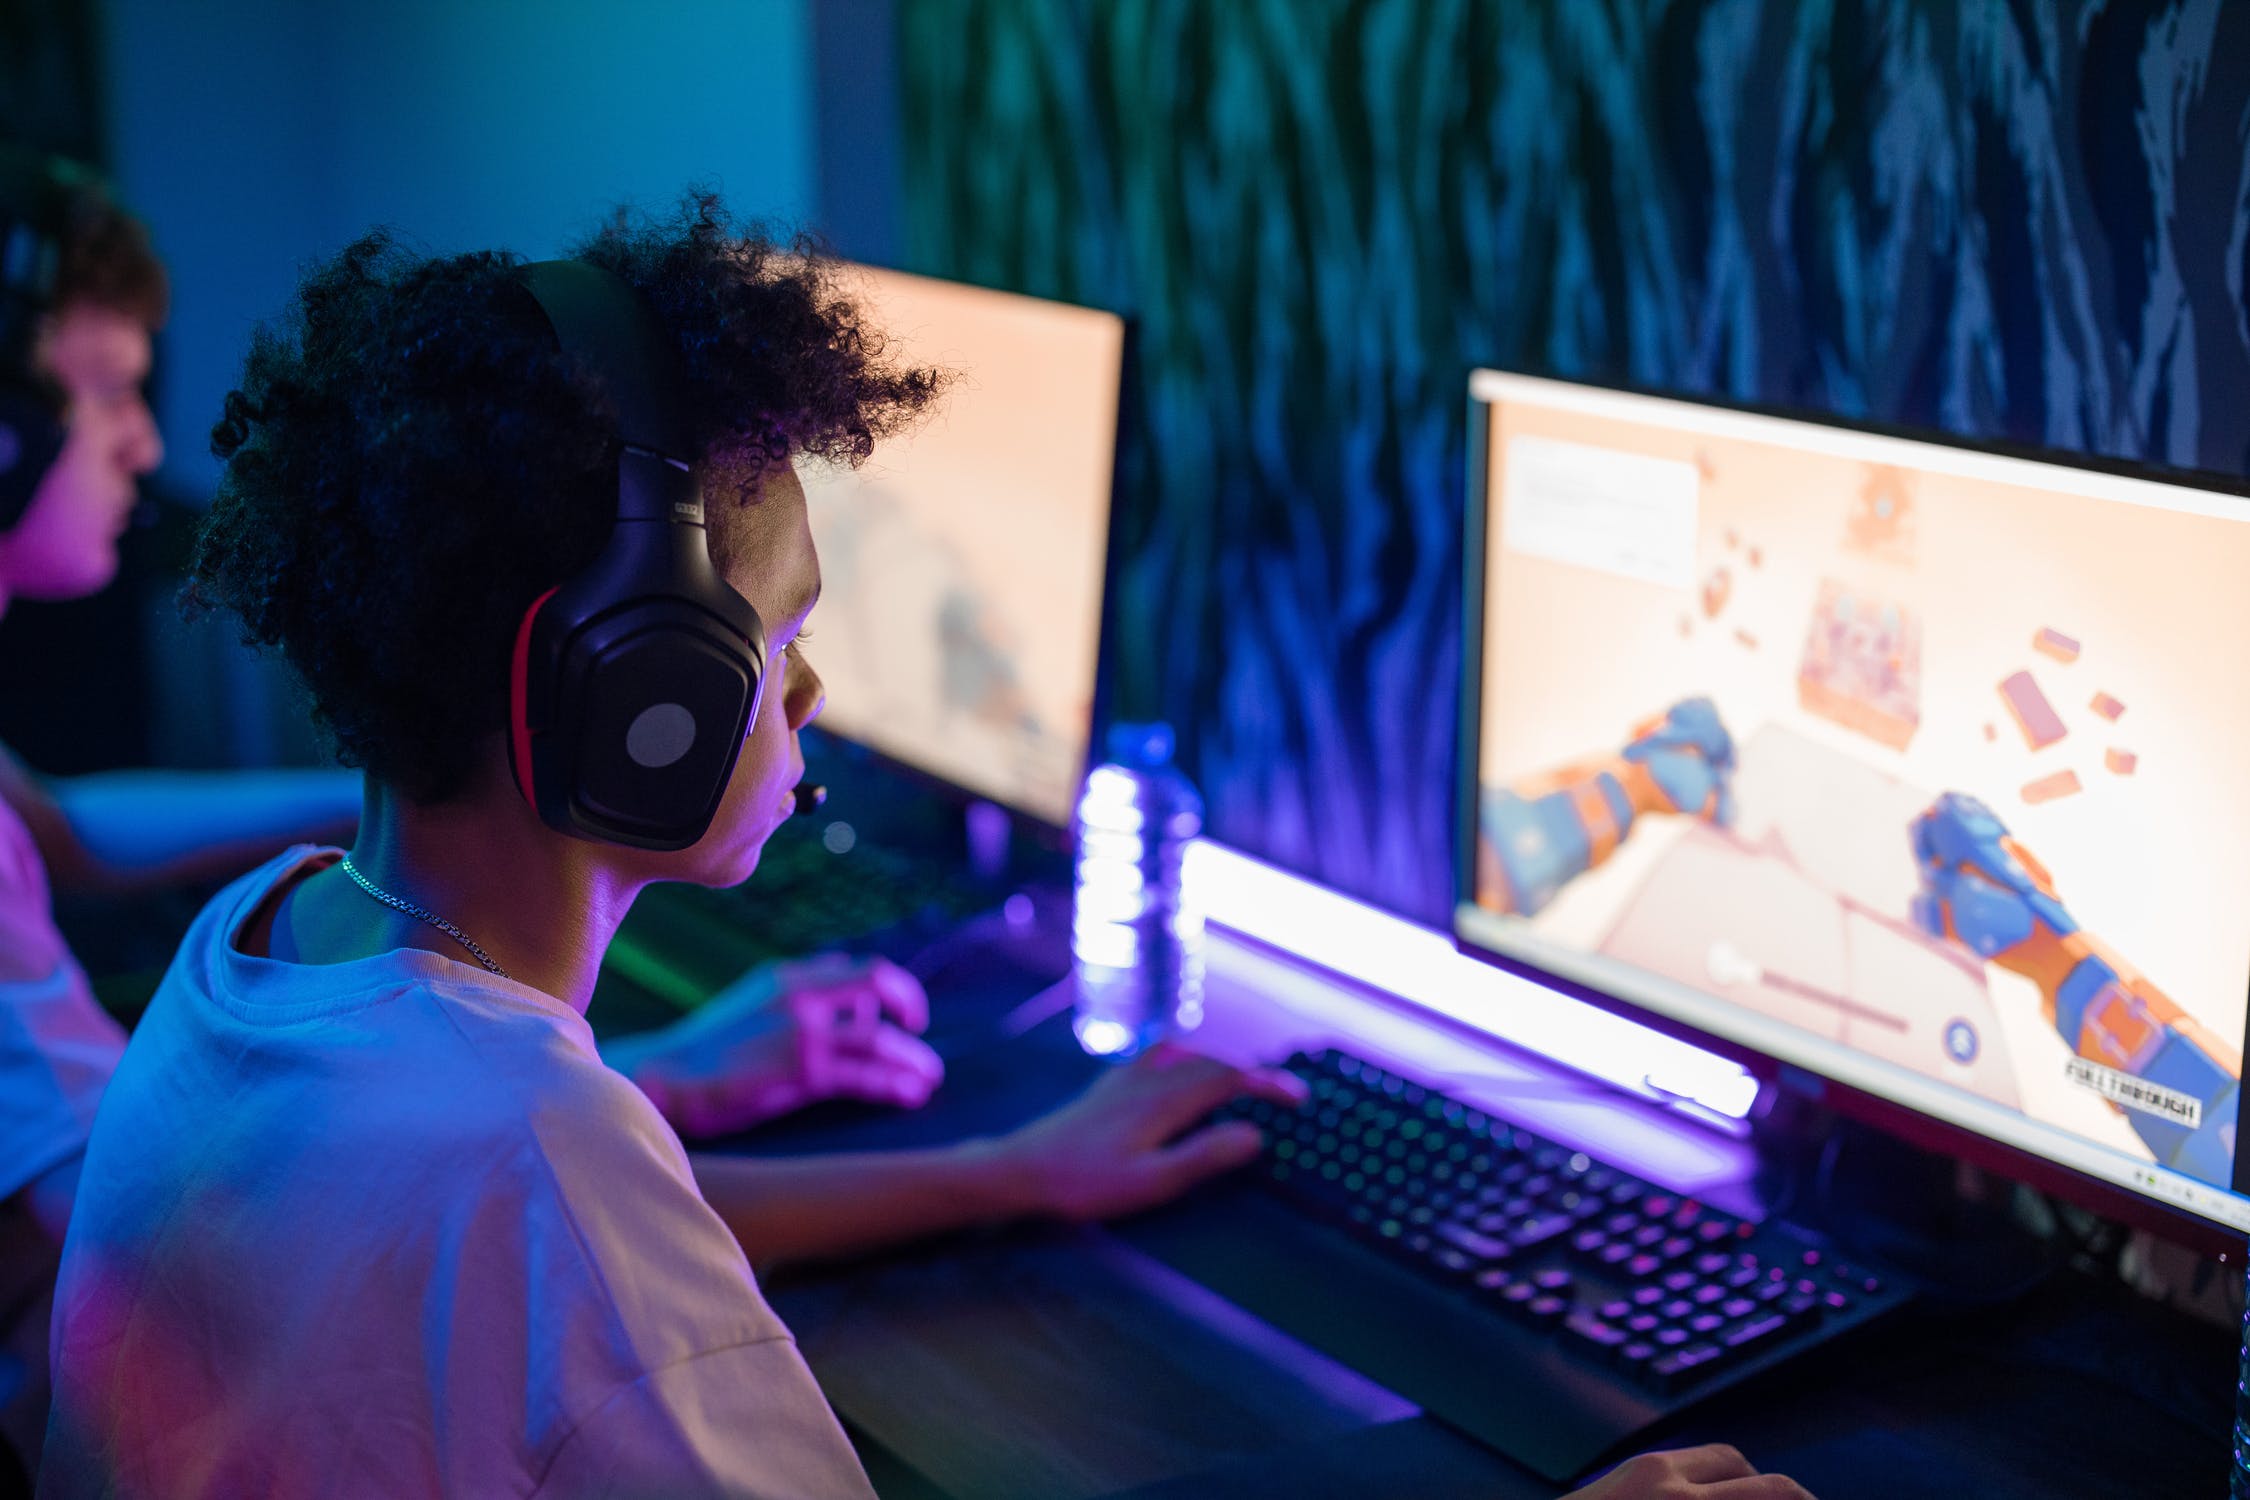 暴力电子游戏对青少年亲社会行为的影响: 共情的重要作用